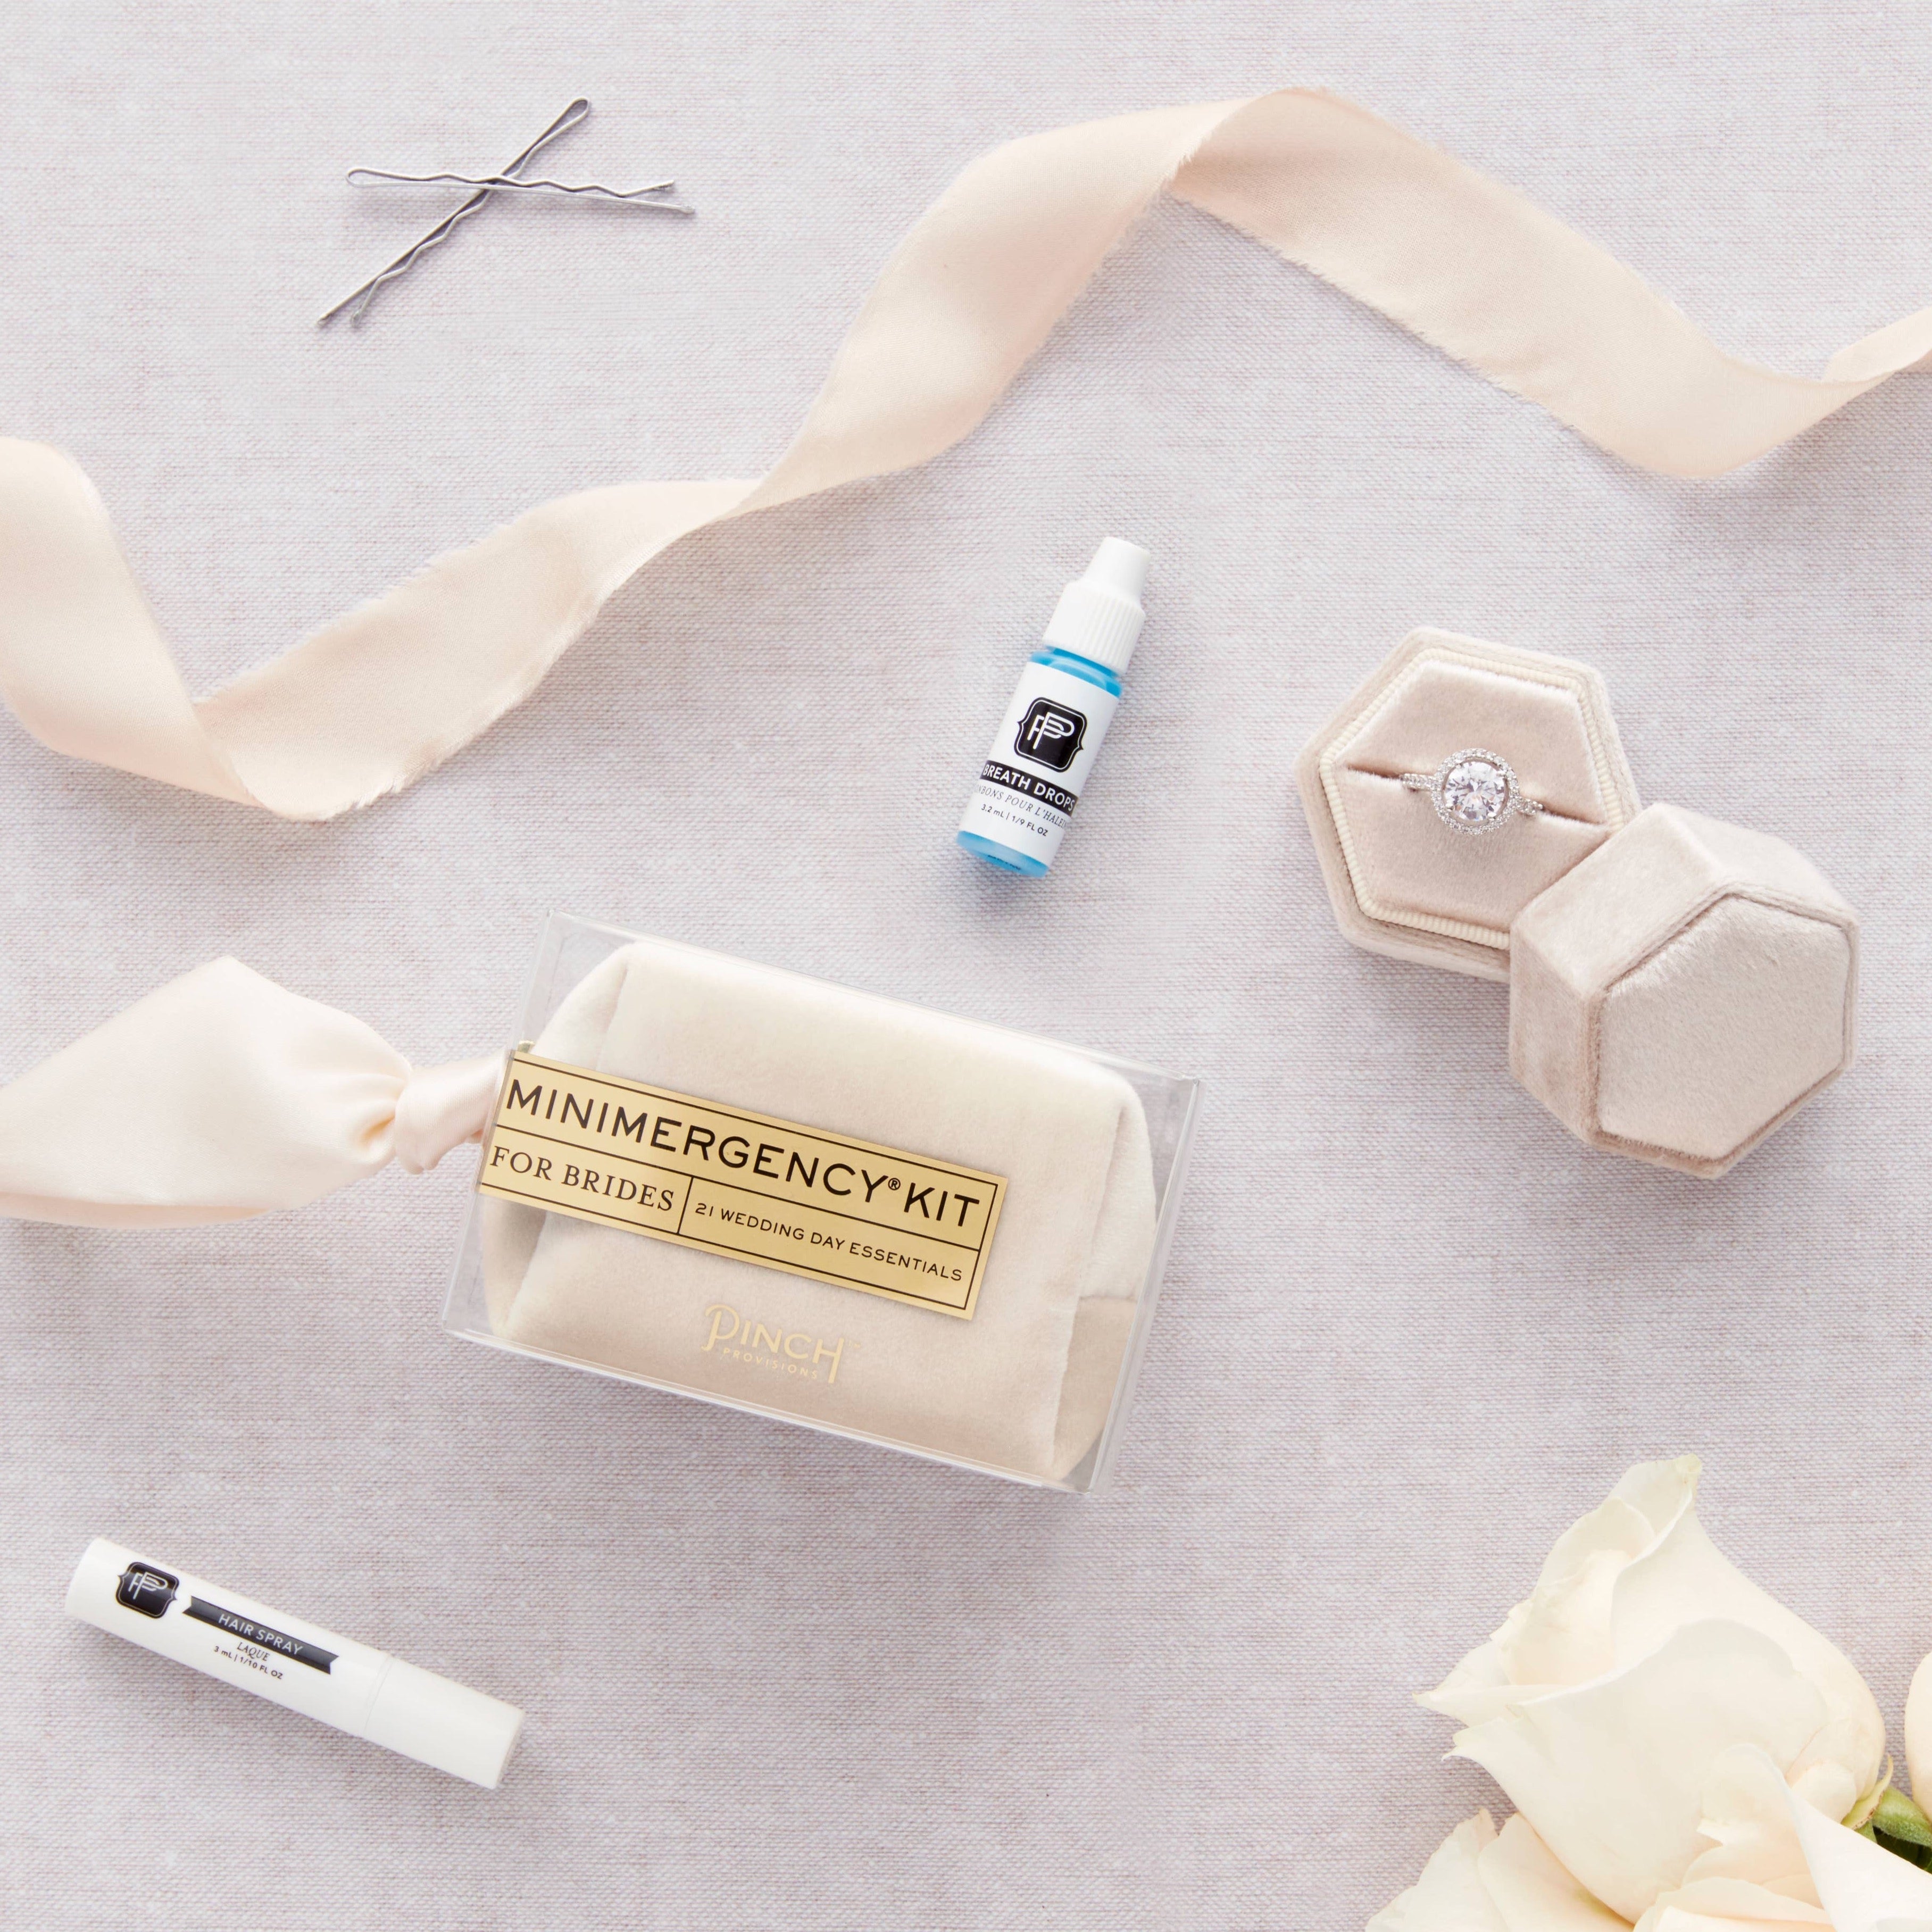 Velvet Minimergency Kits for Brides: Ivory by Pinch Provisions